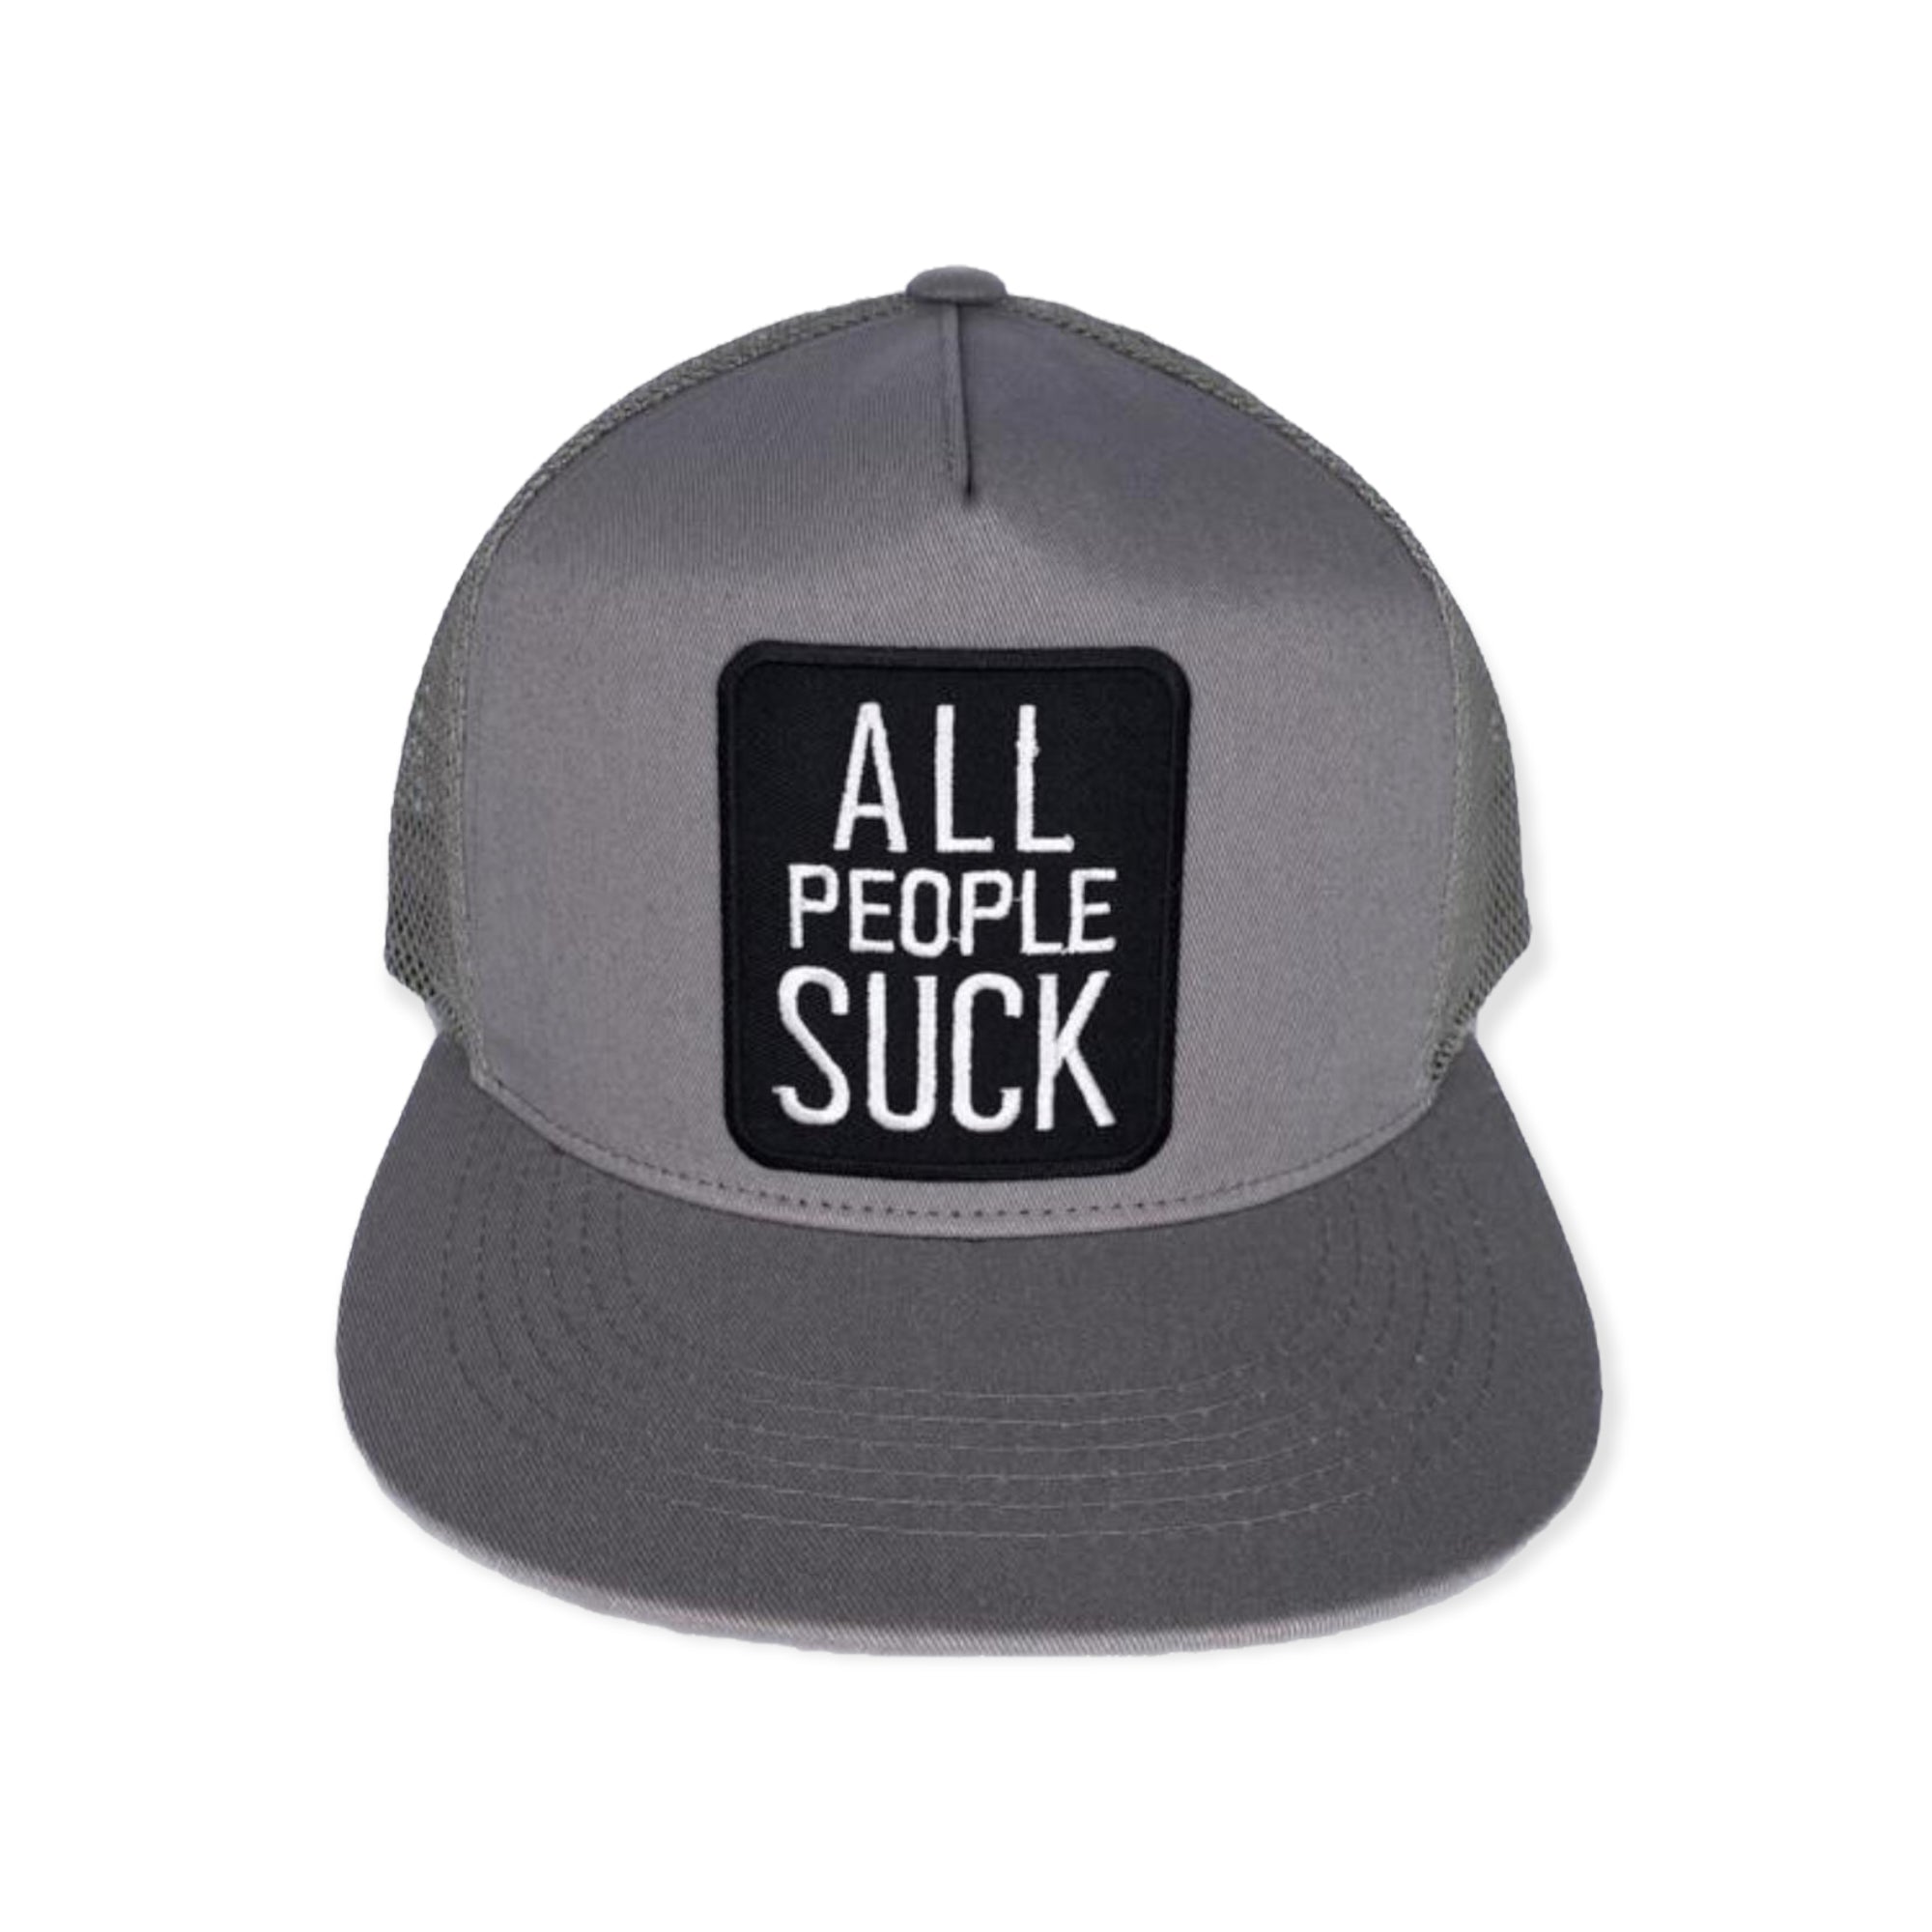 MV HATS: All People Suck Trucker Hat TUK048